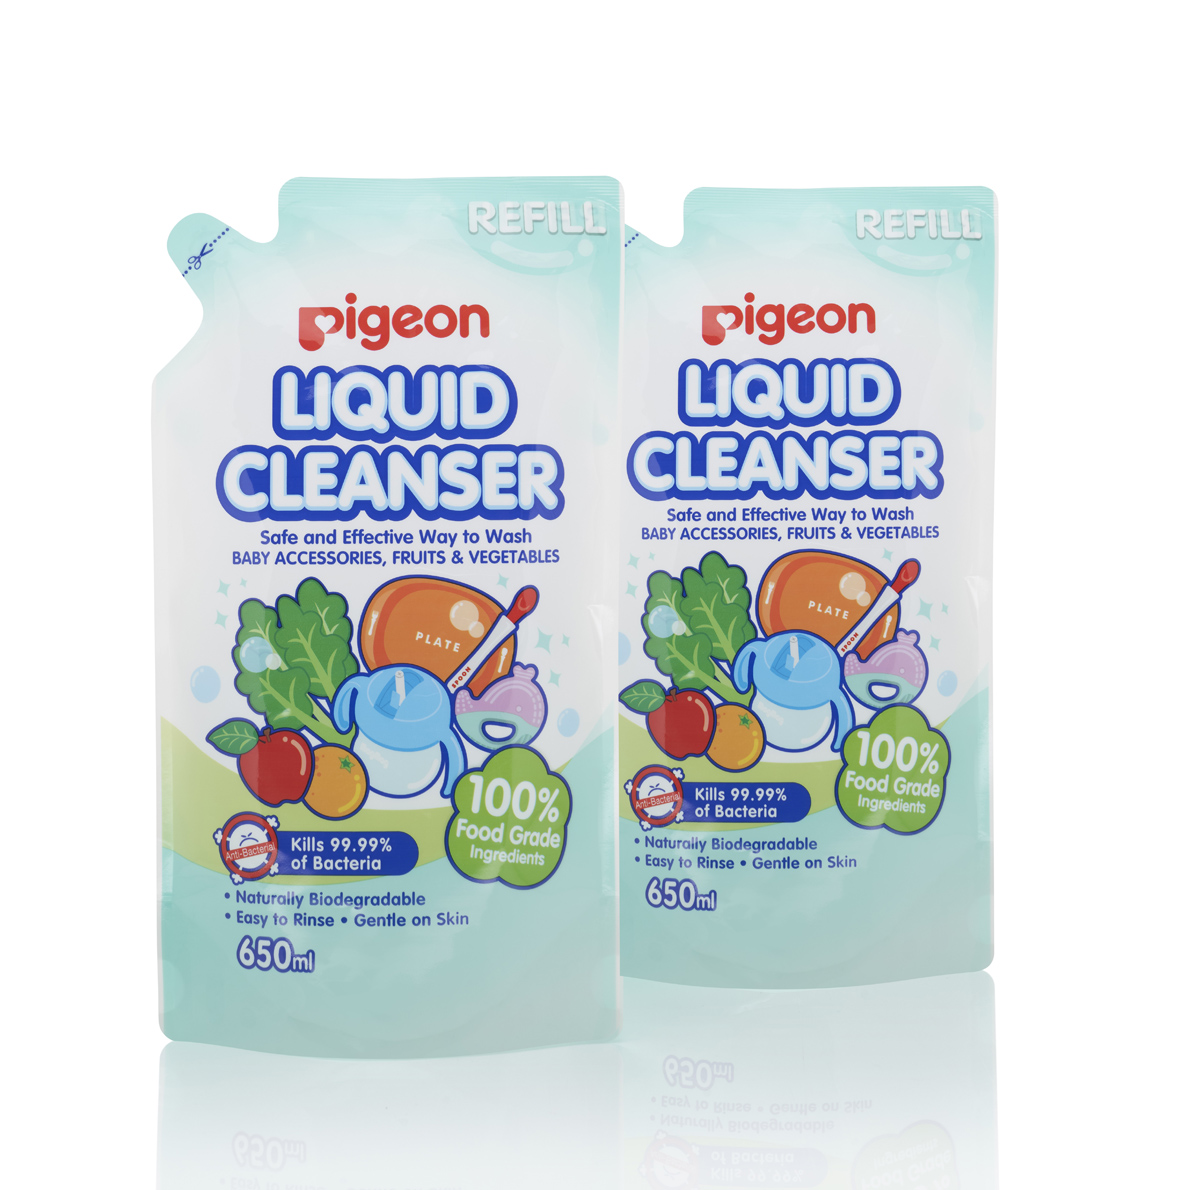 baby-fair Pigeon Liquid Cleanser 650ml Refill 2 In 1 Bag (PG-26789)